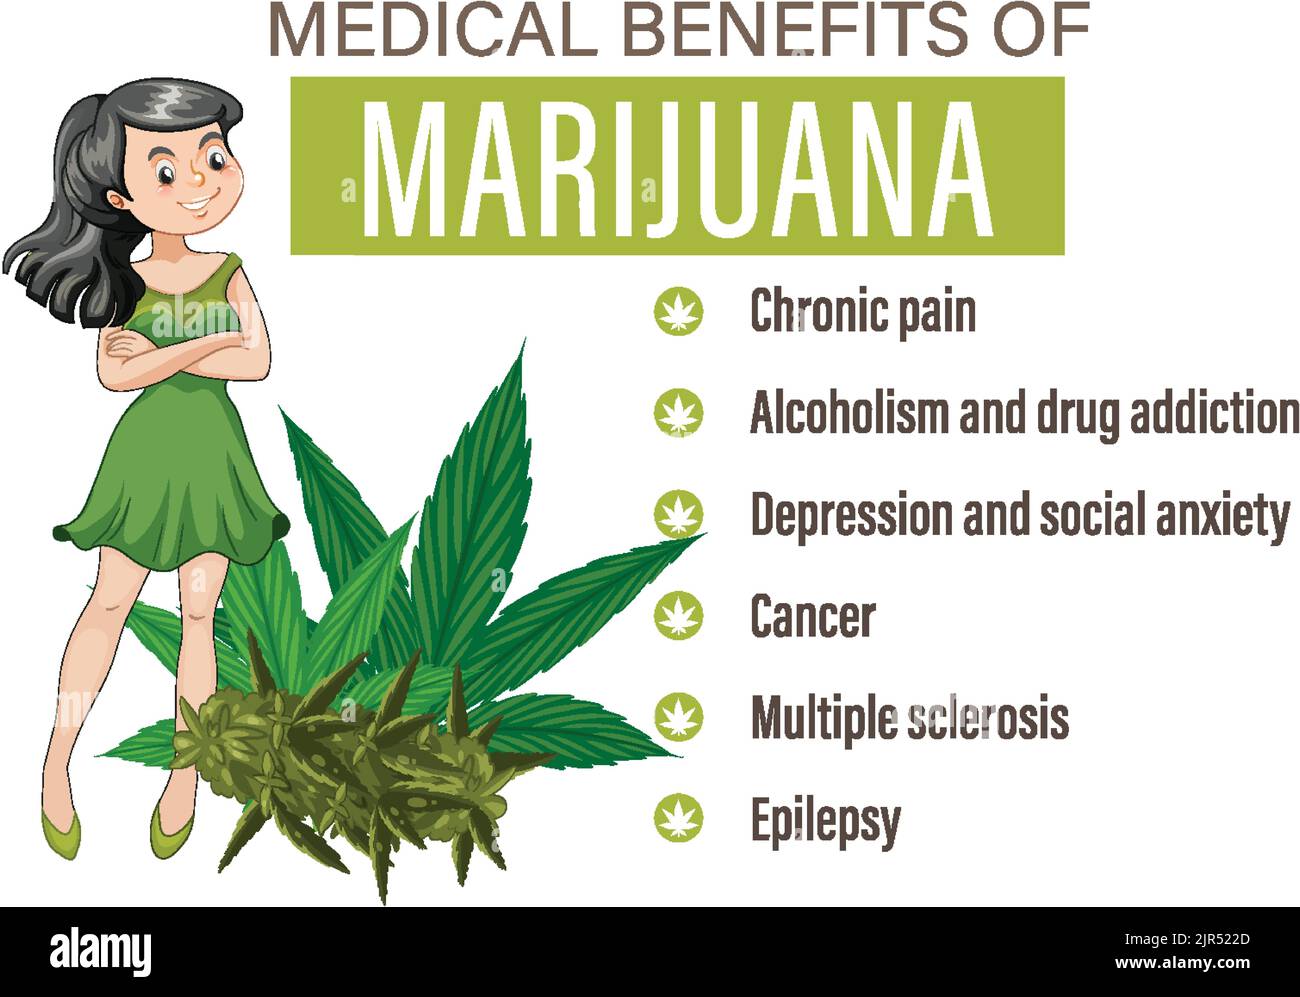 Los beneficios del uso de la marihuana medicinal